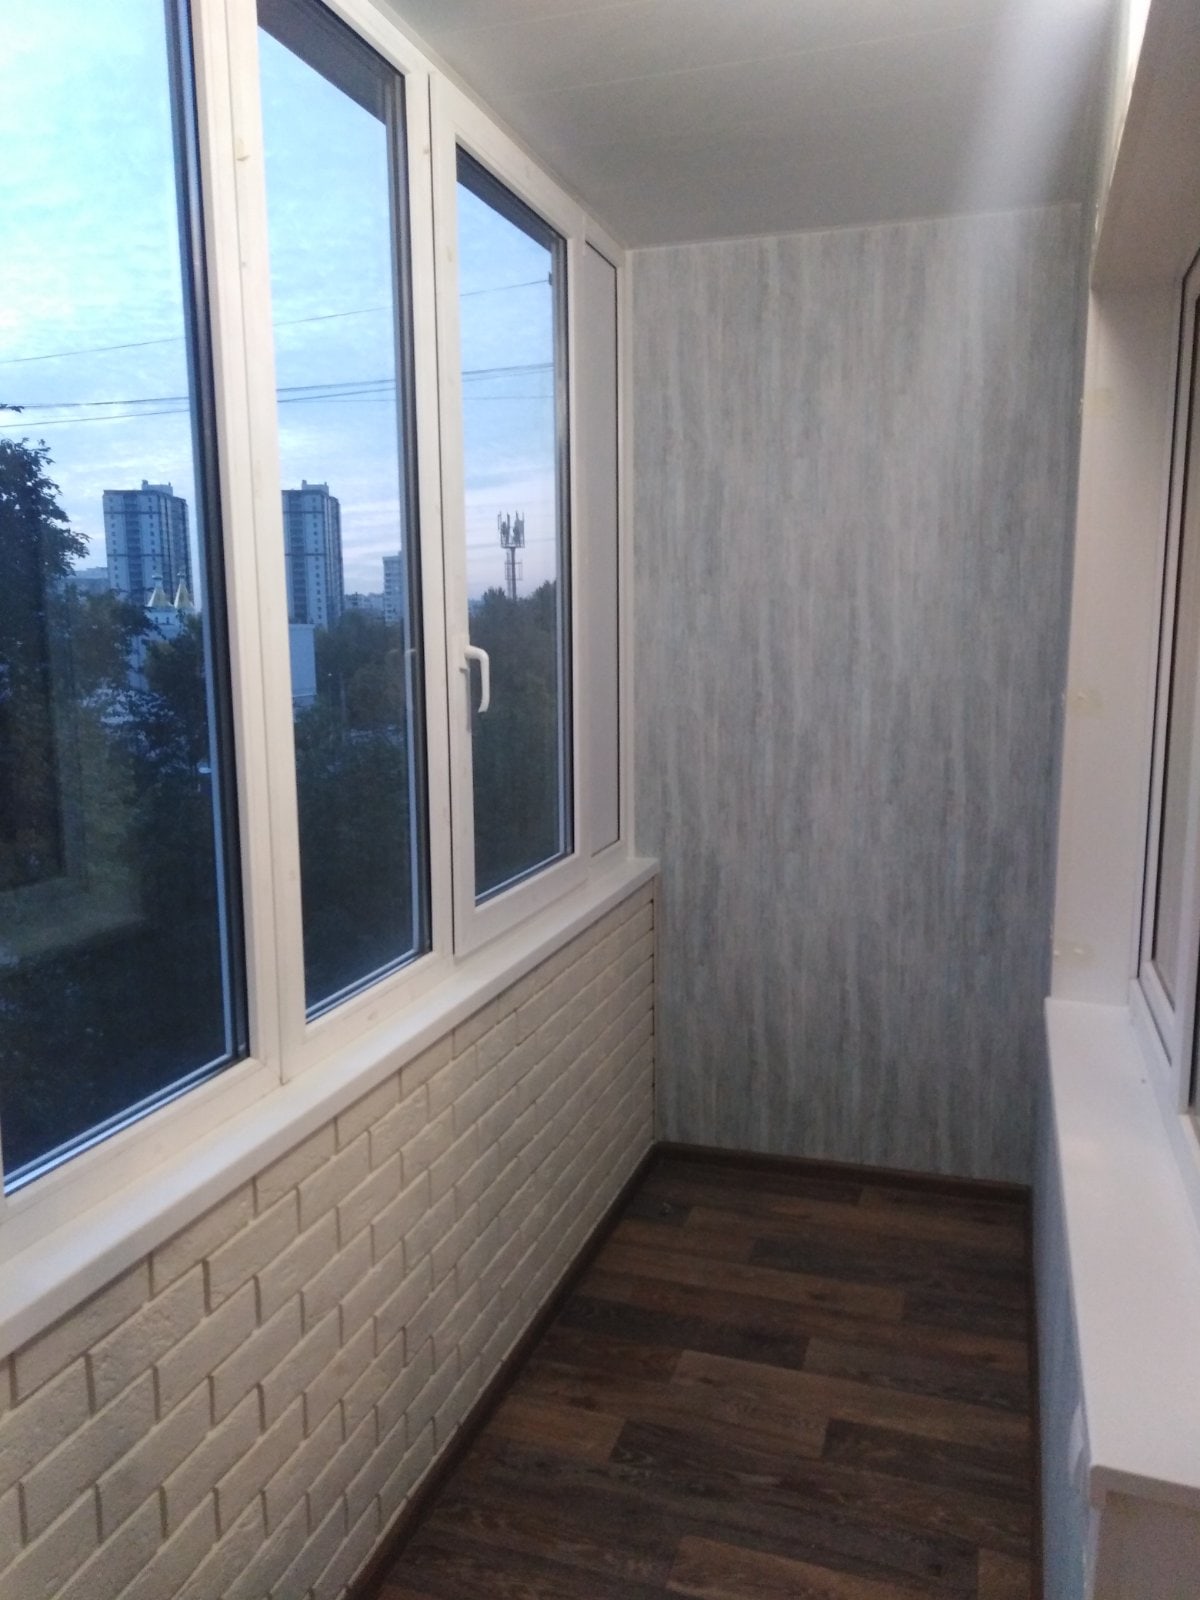 Косметический ремонт балкона с теплым остеклением - фото 1